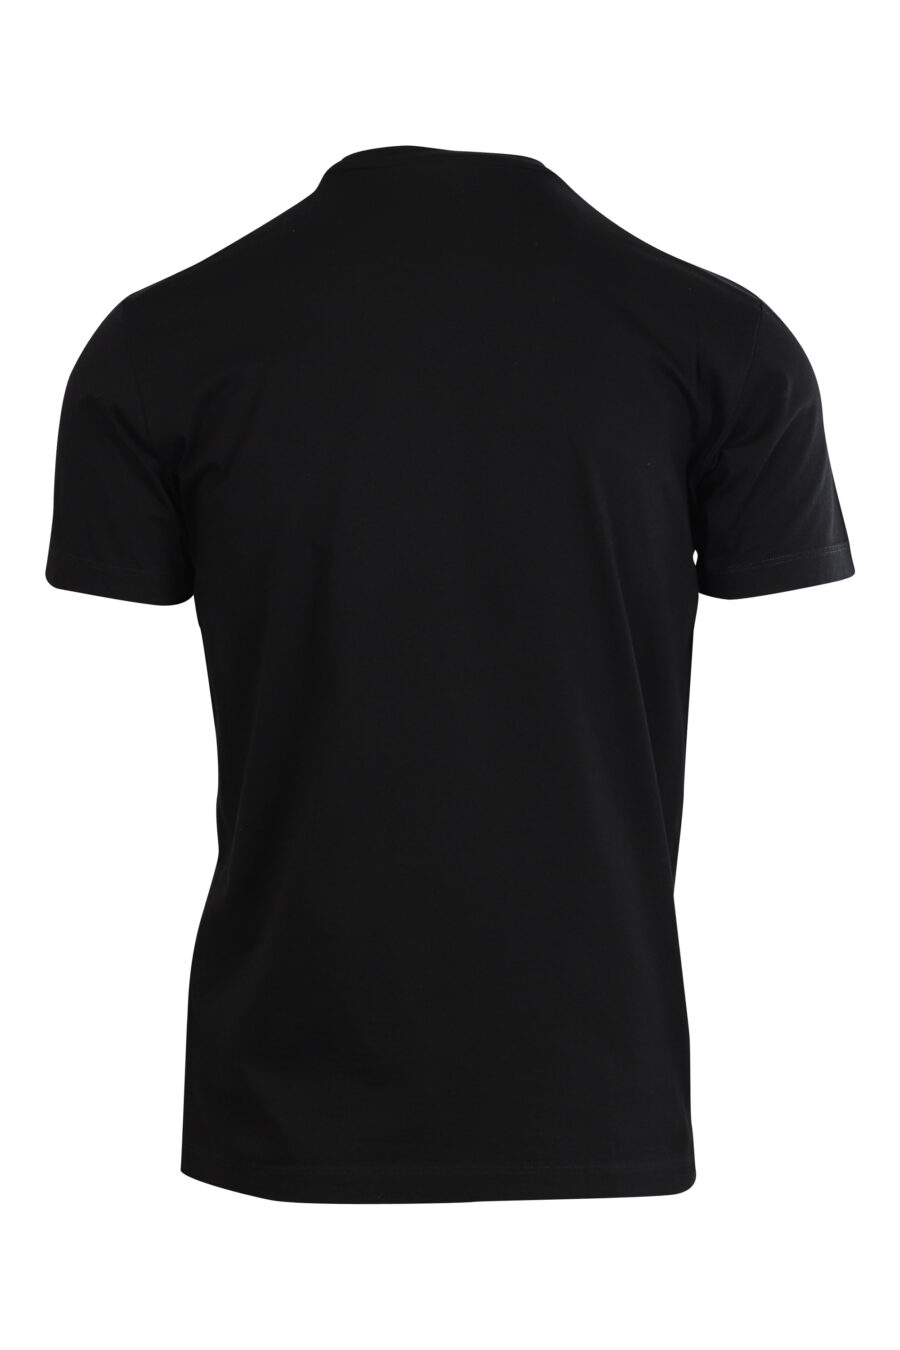 T-shirt preta com maxilogo "icon pixeled" turquesa e fúcsia - 8052134981269 2